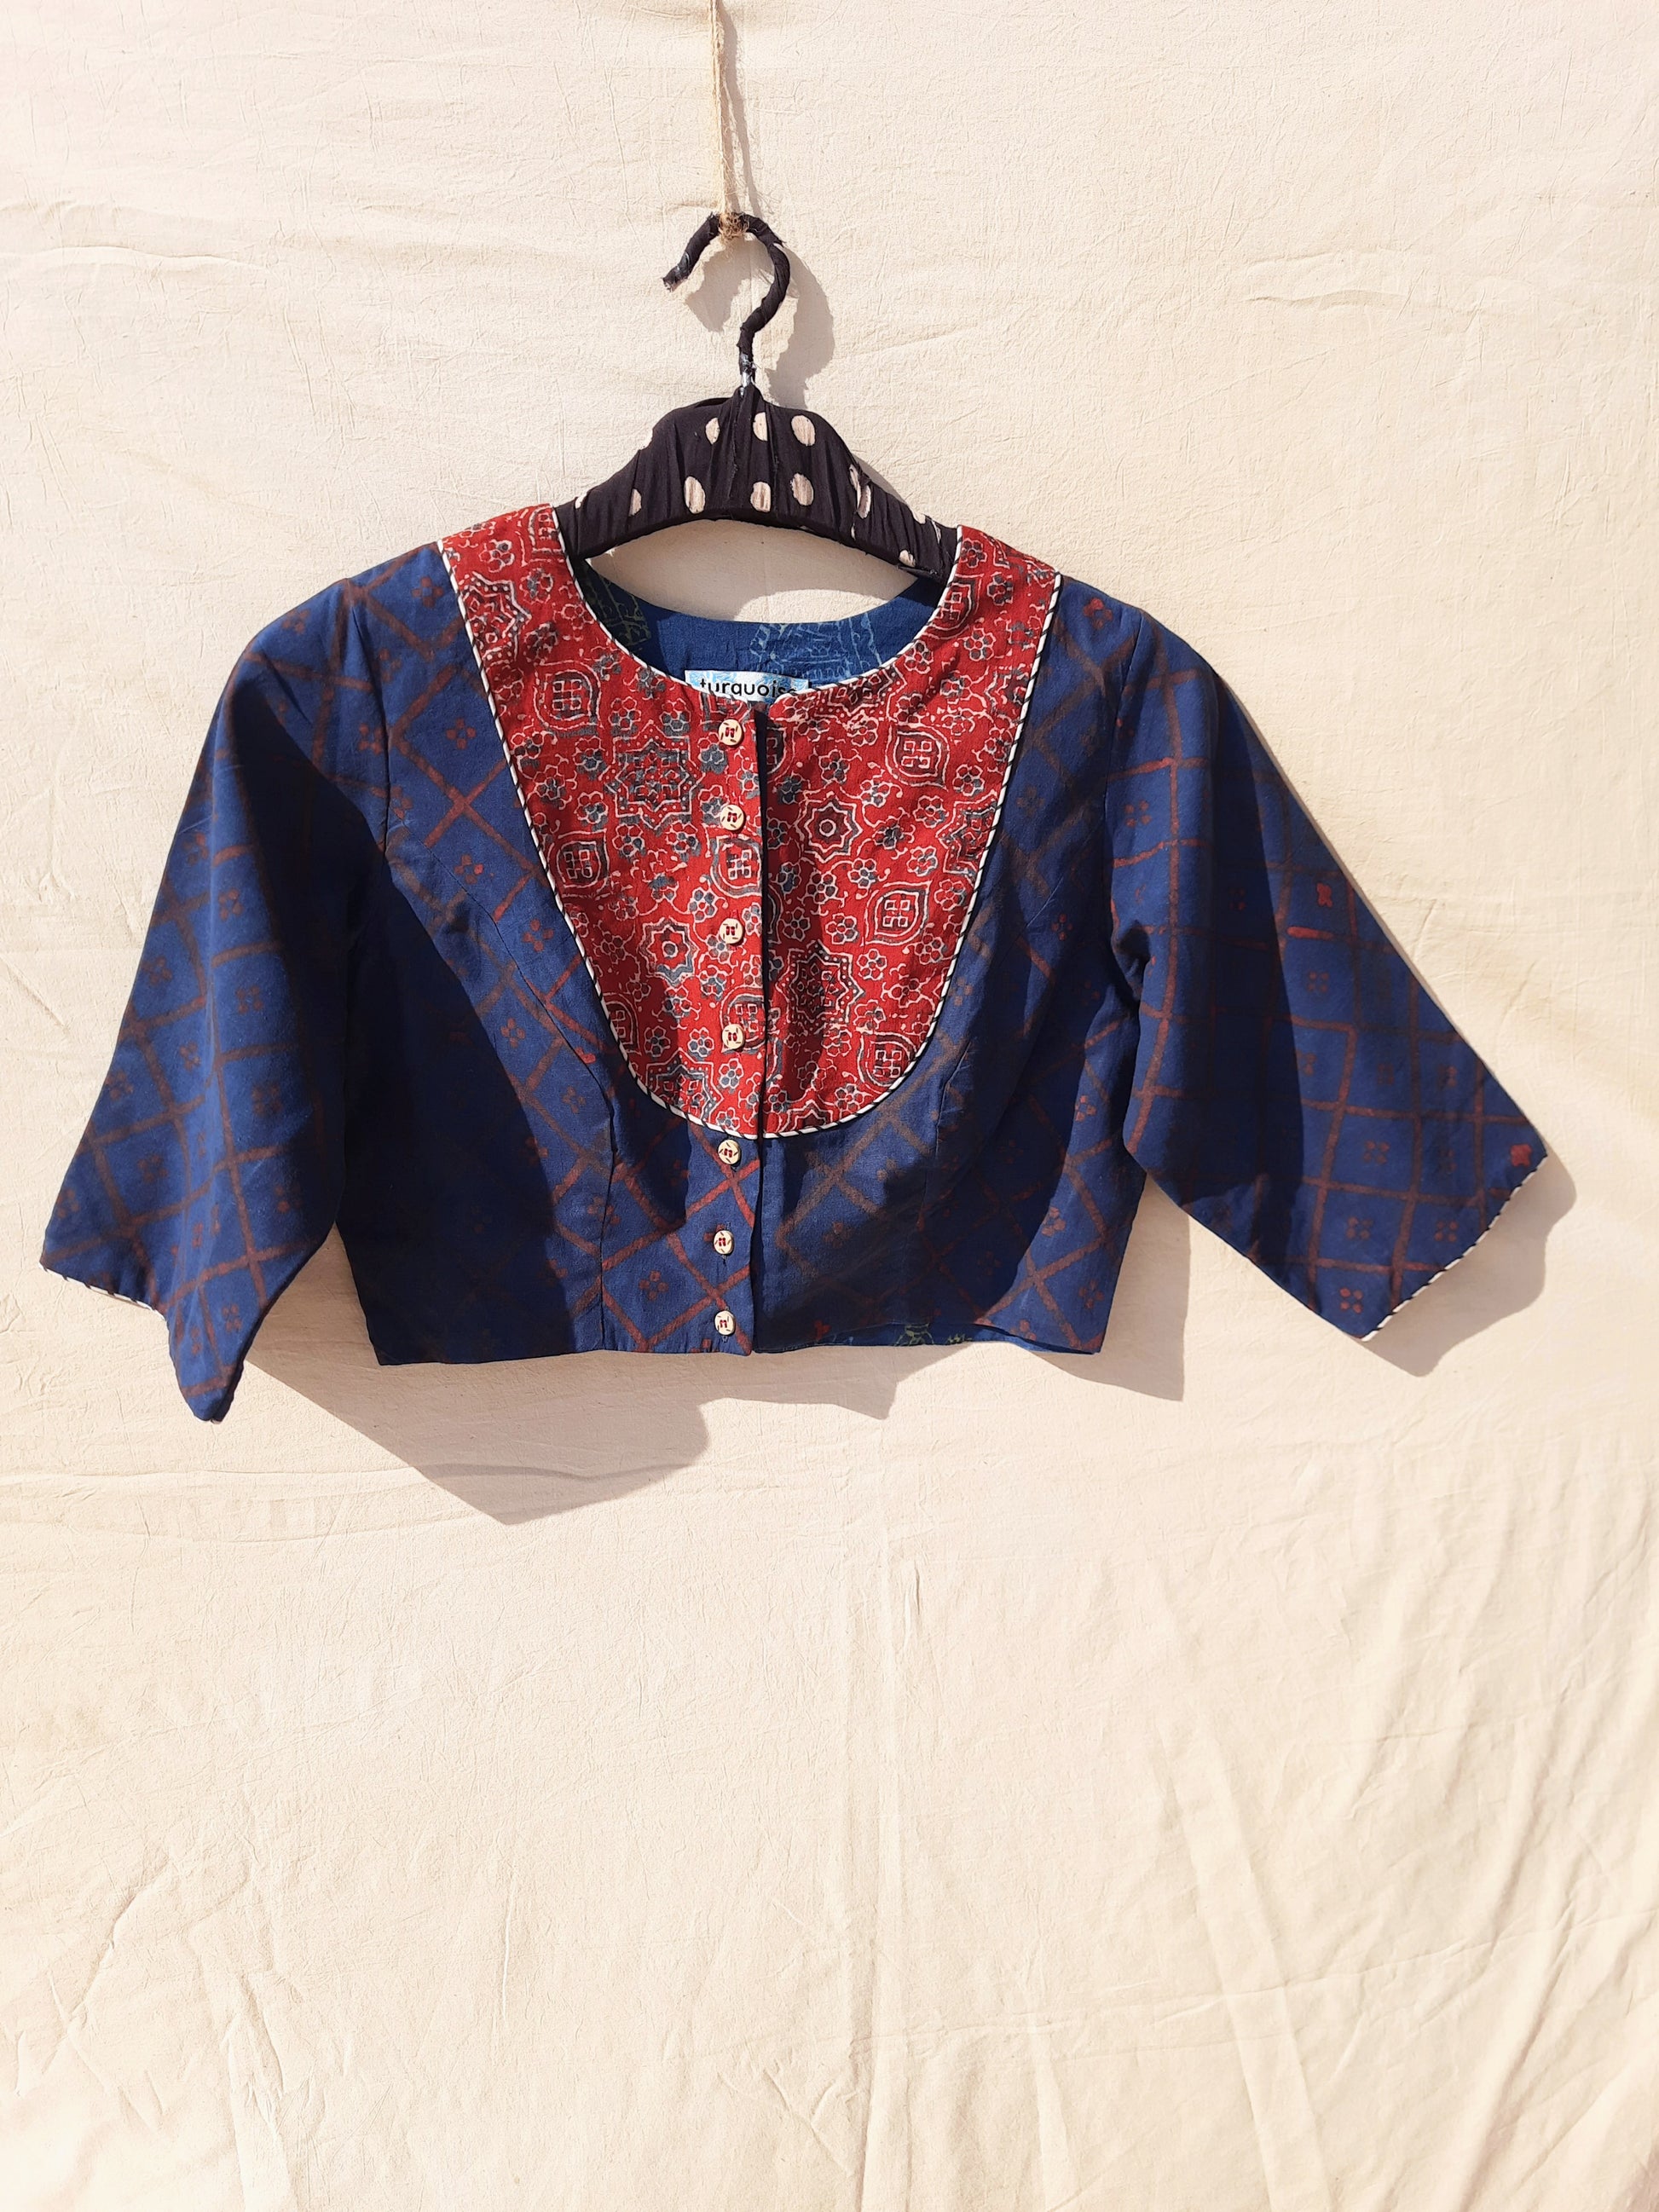 Indigo and madder red ajrakh blouse, Indigo dyed blouse, Handmade blouse, Sustainable luxury